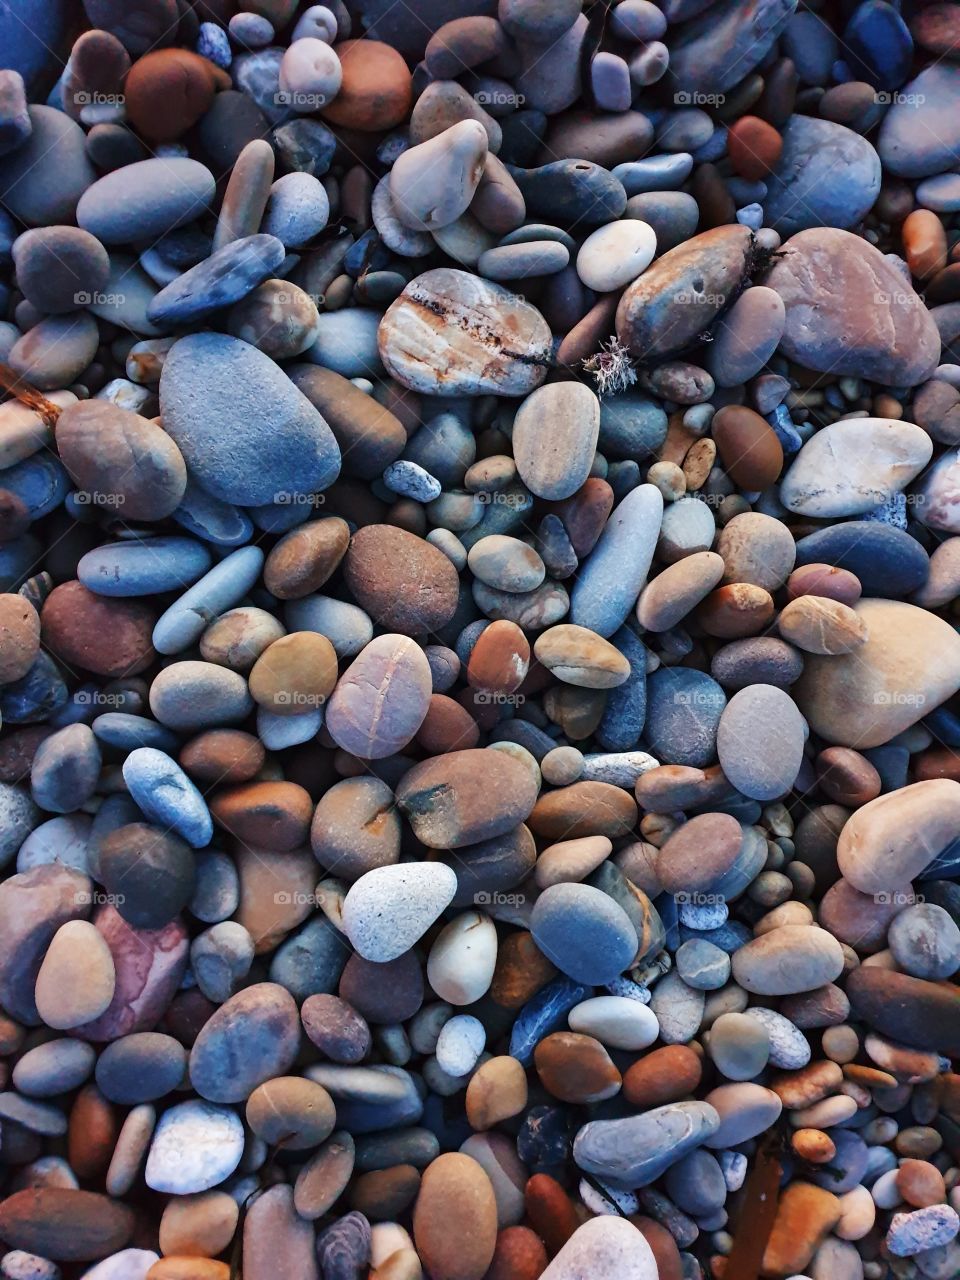 Pebbles at a local beach